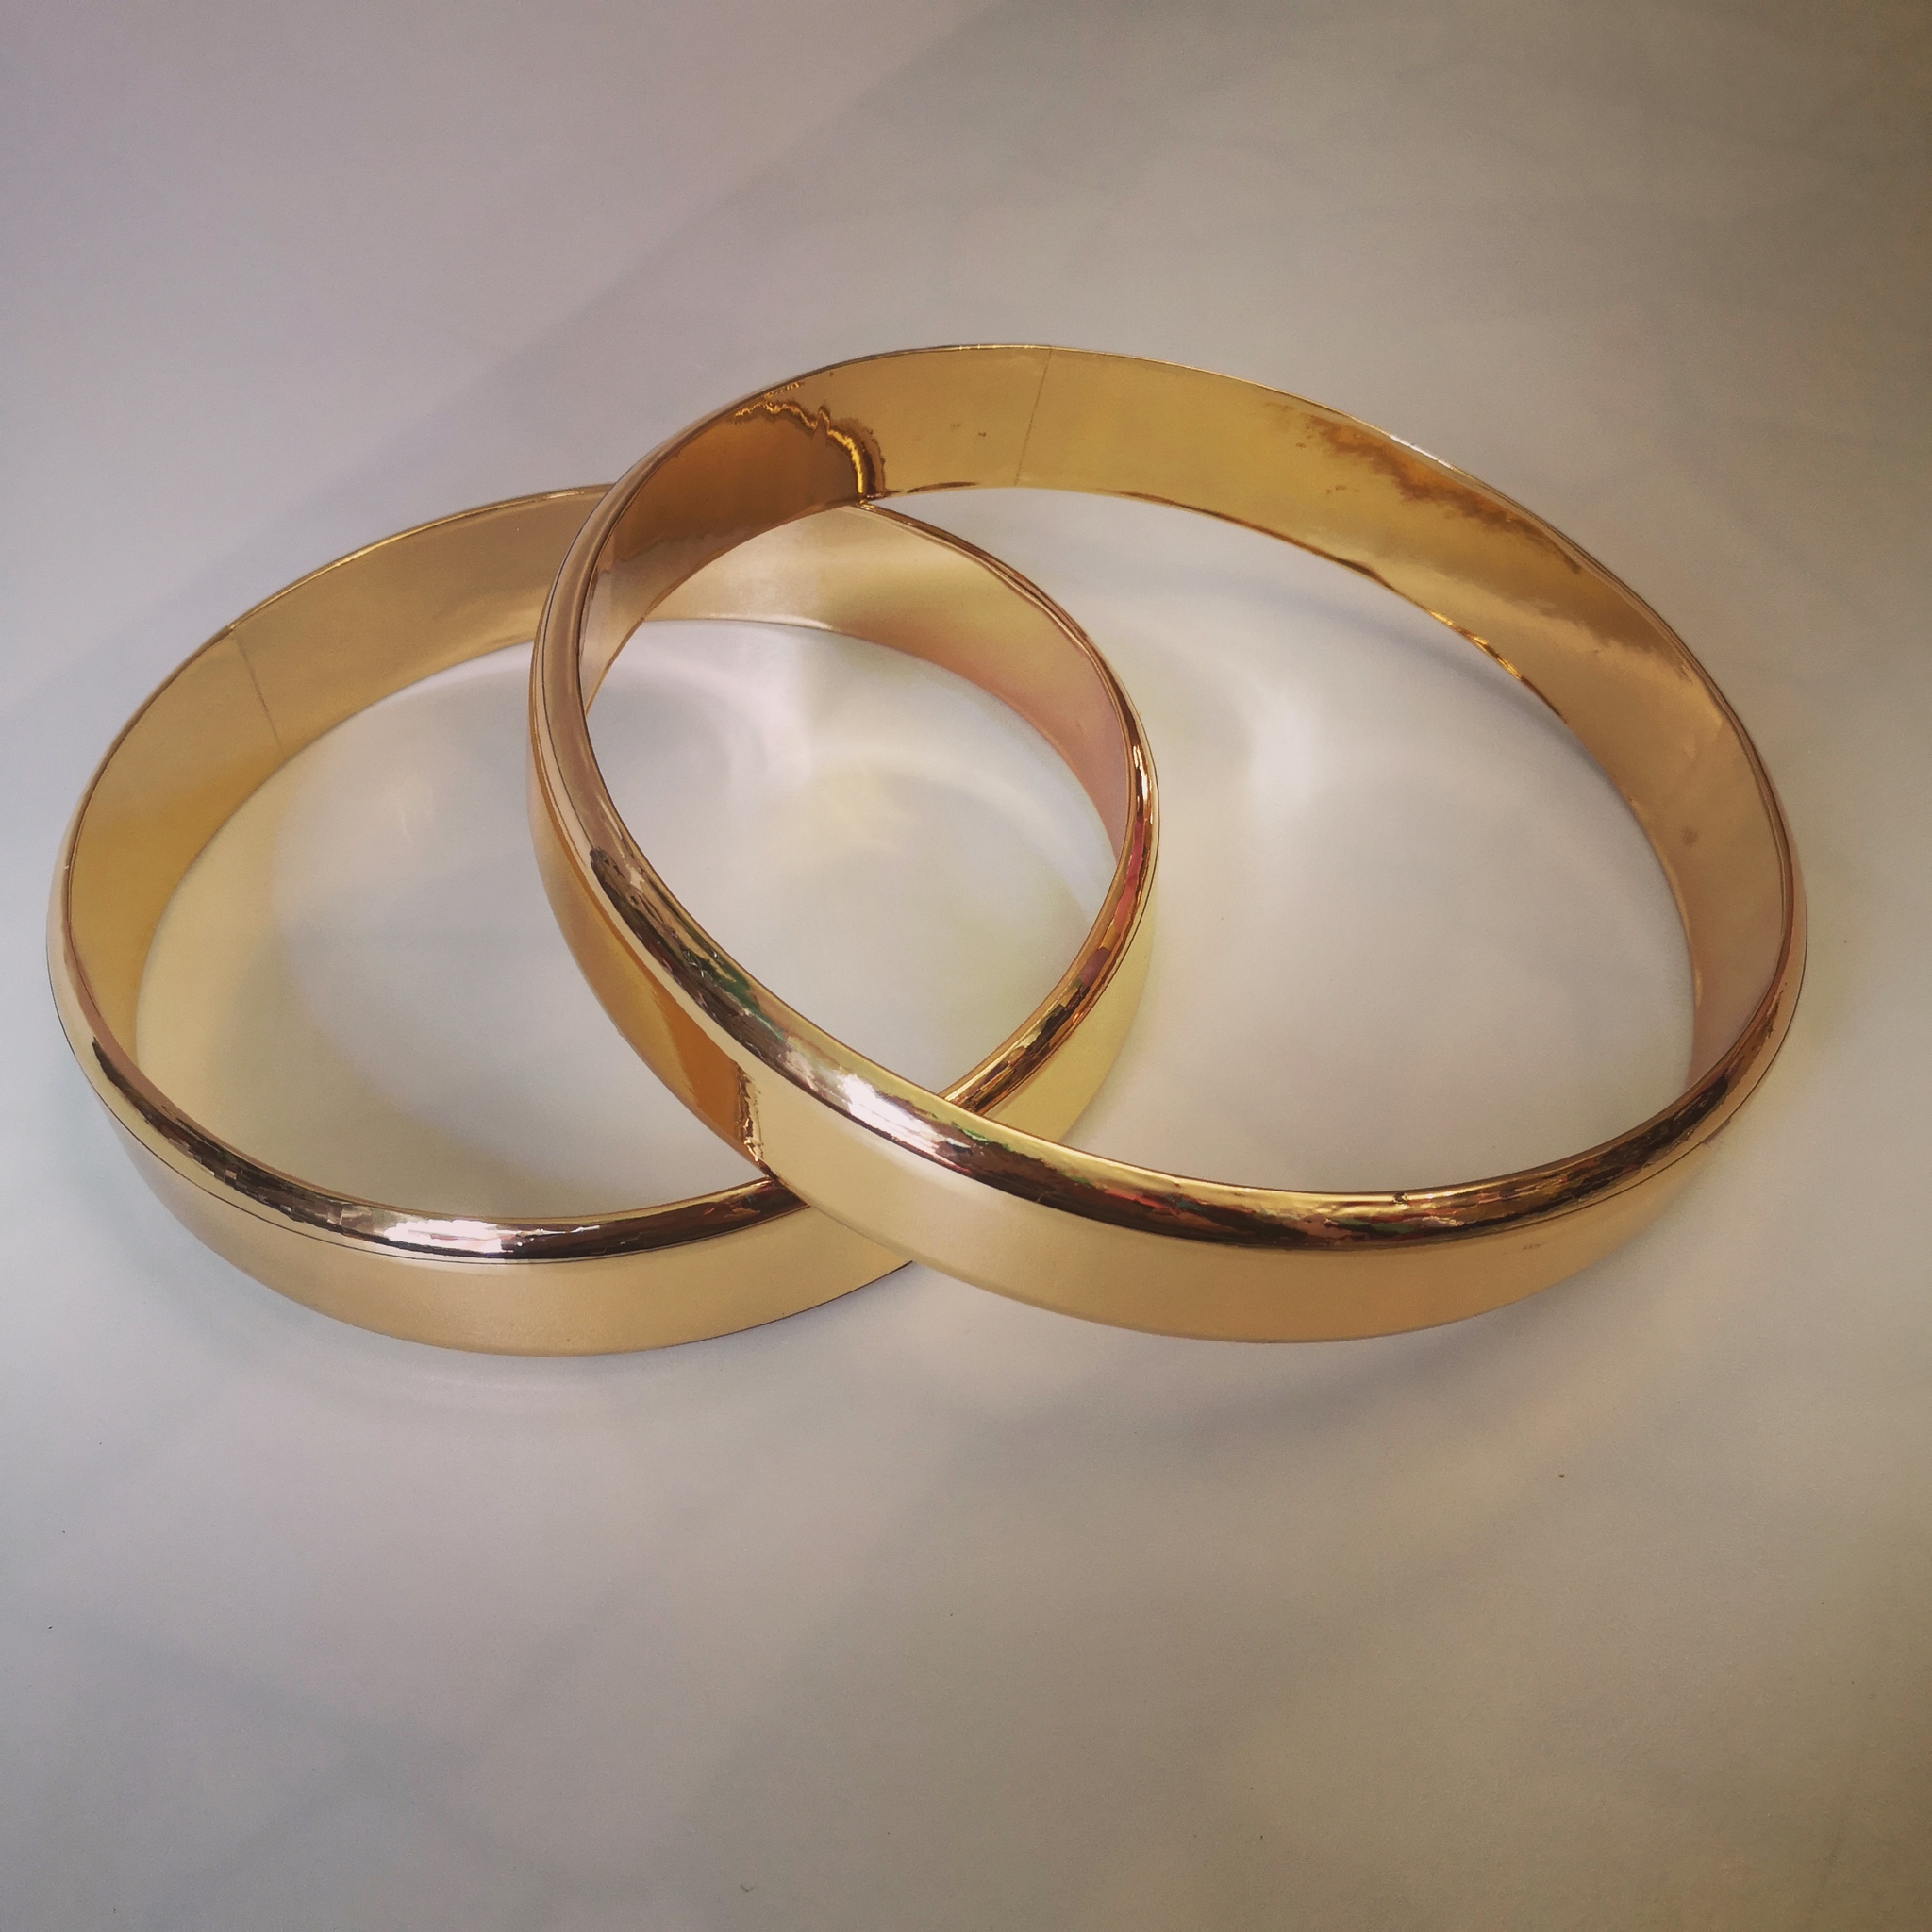 Сургучная печать Manuscript Rings (свадебные кольца), 1,9см для скрапбукинга купить в Украине